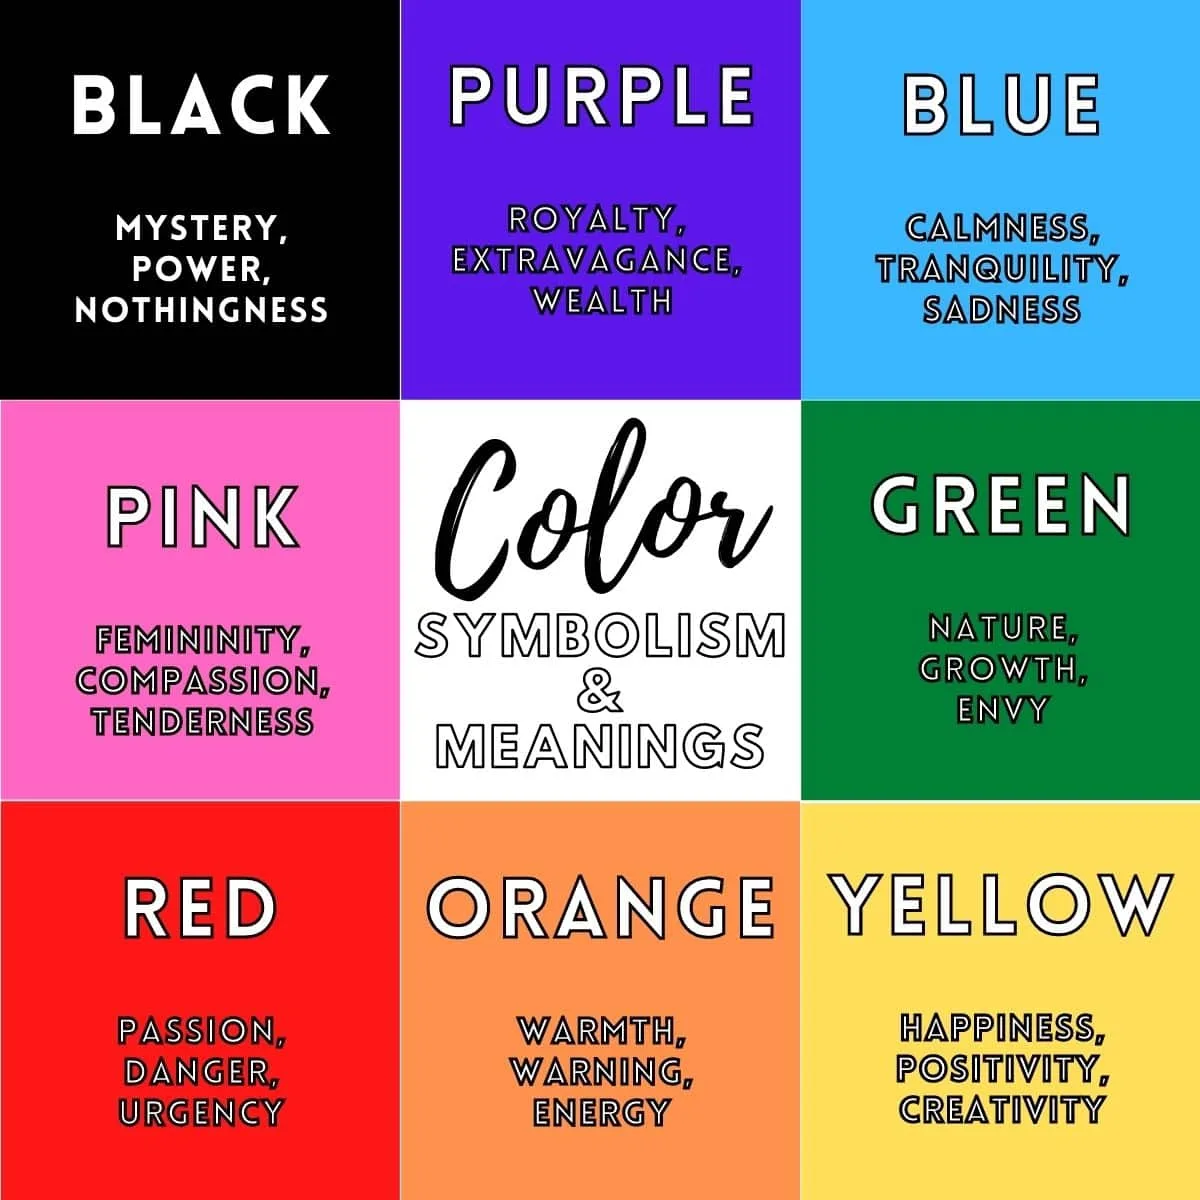 penting untuk memahami arti-arti dan makna yang terkait dengan berbagai warna dalam spektrum warna yang luas.